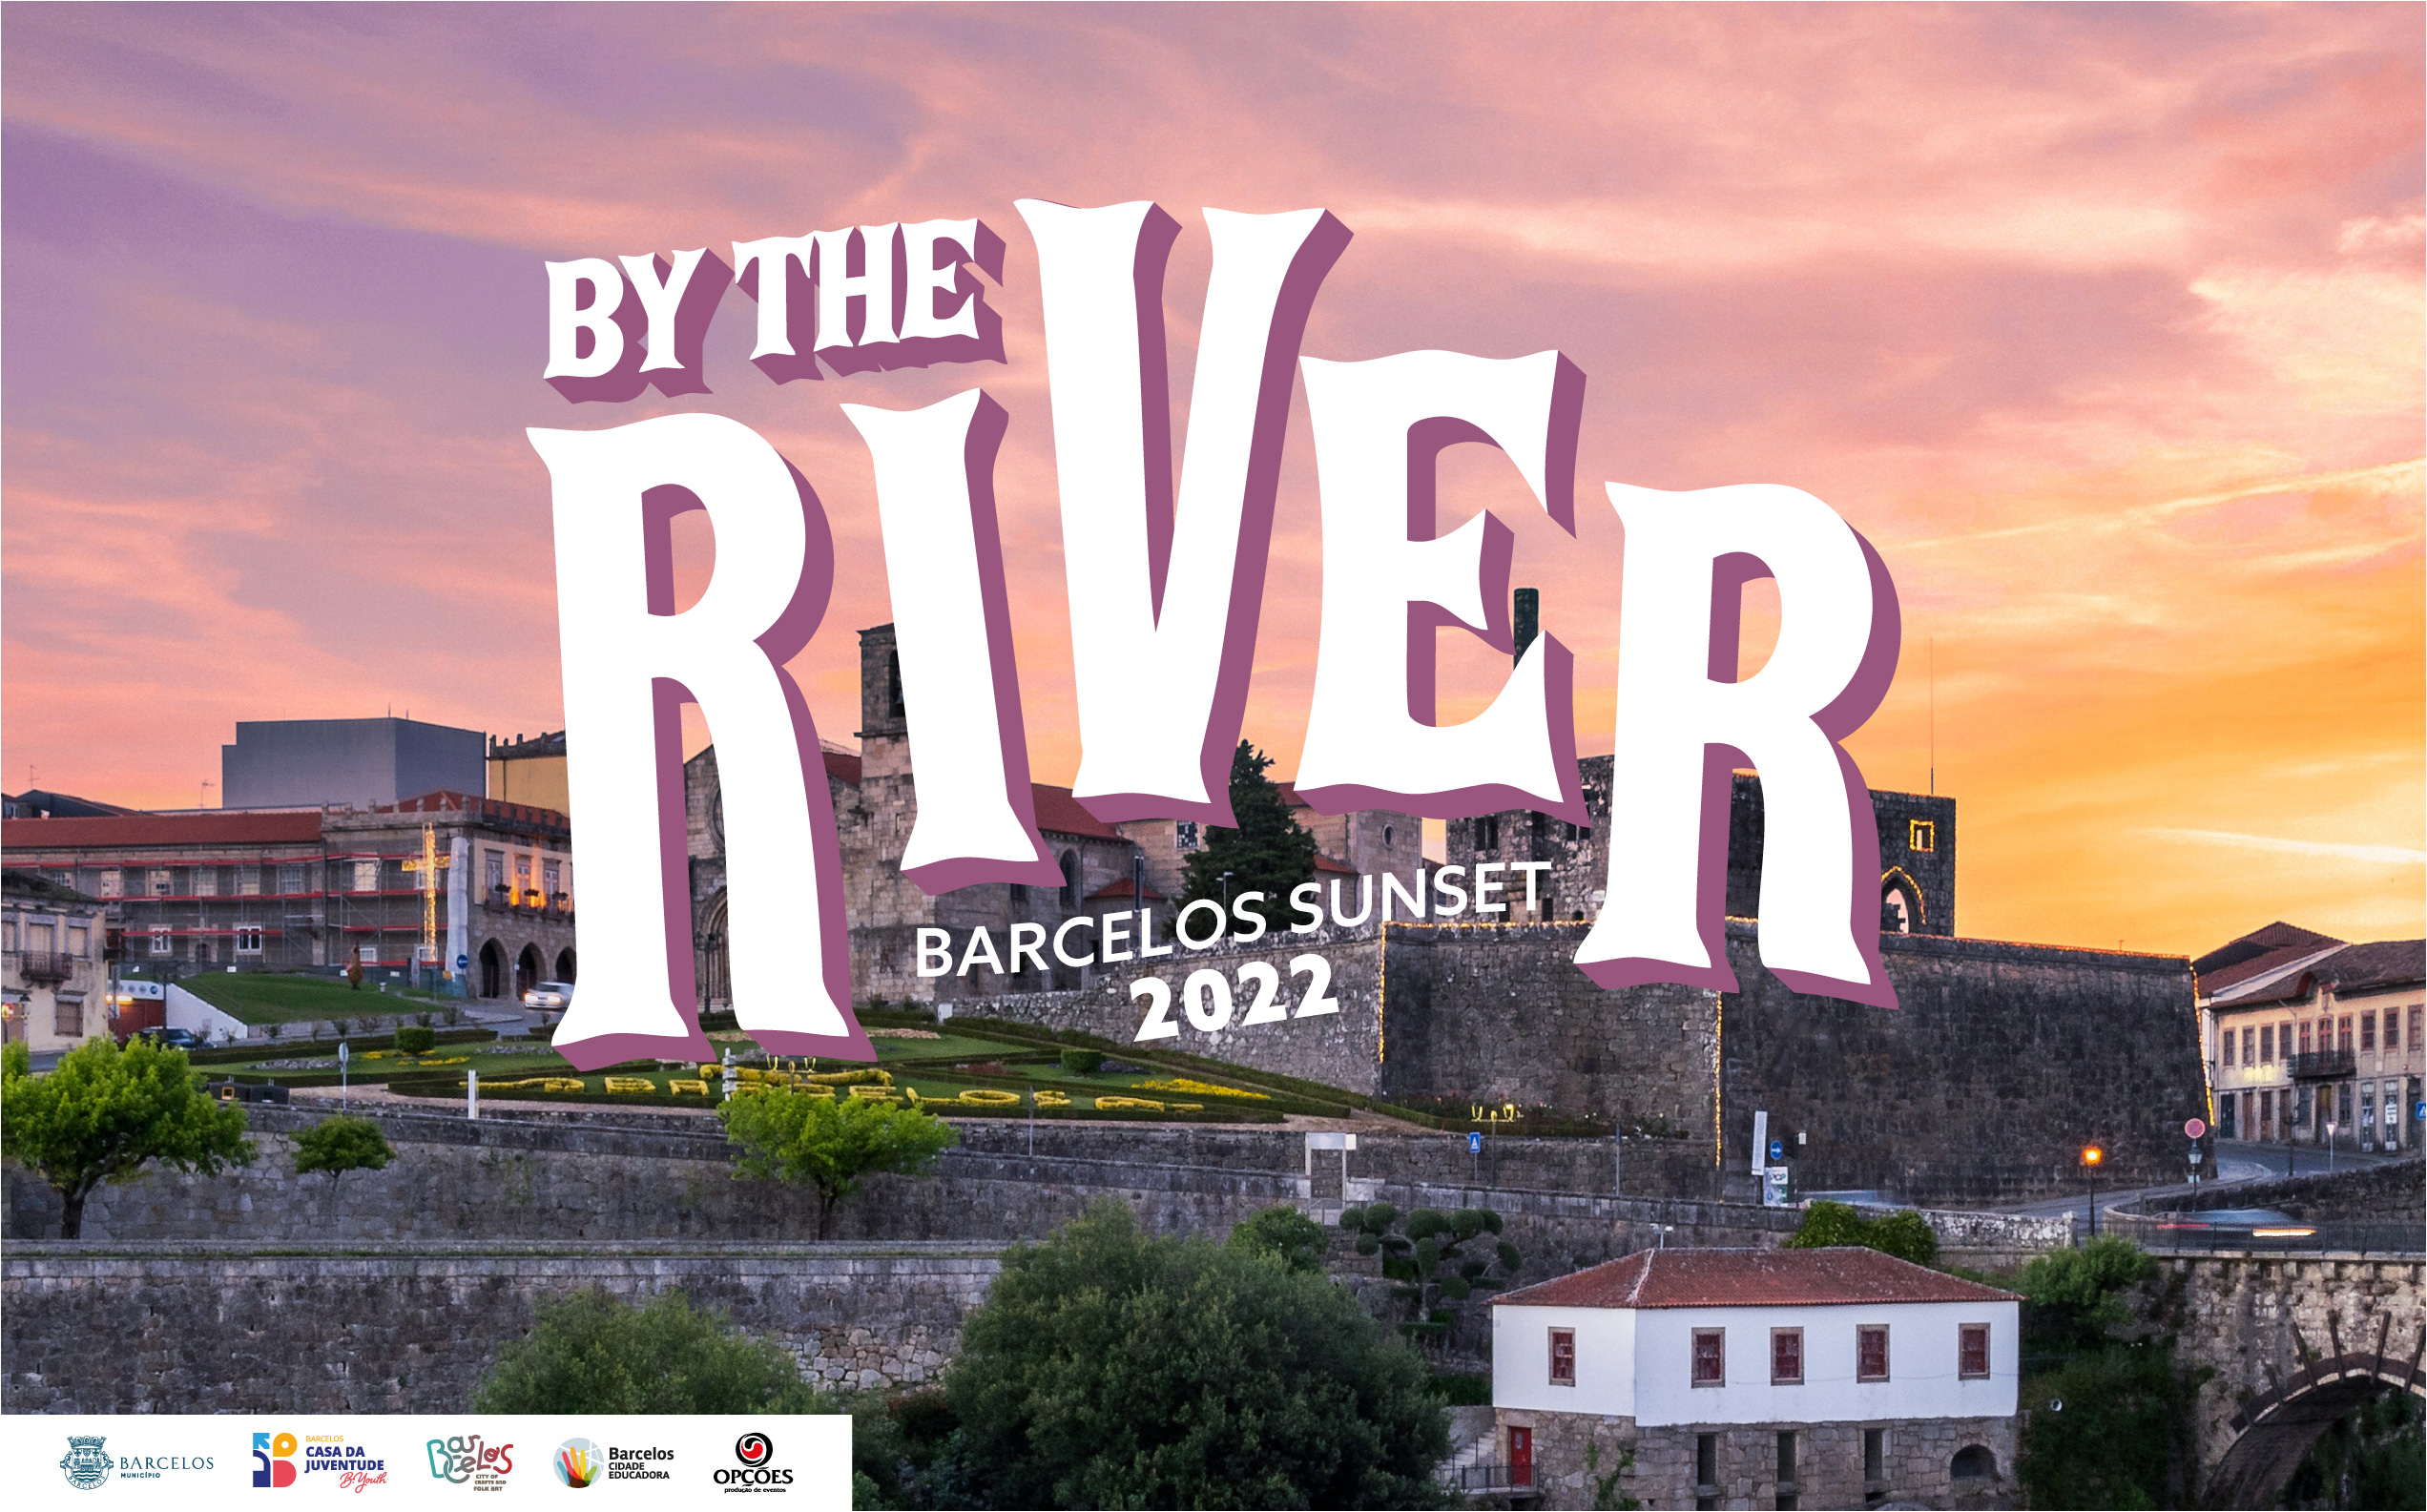 By The River anima fins de tarde em Barcelos